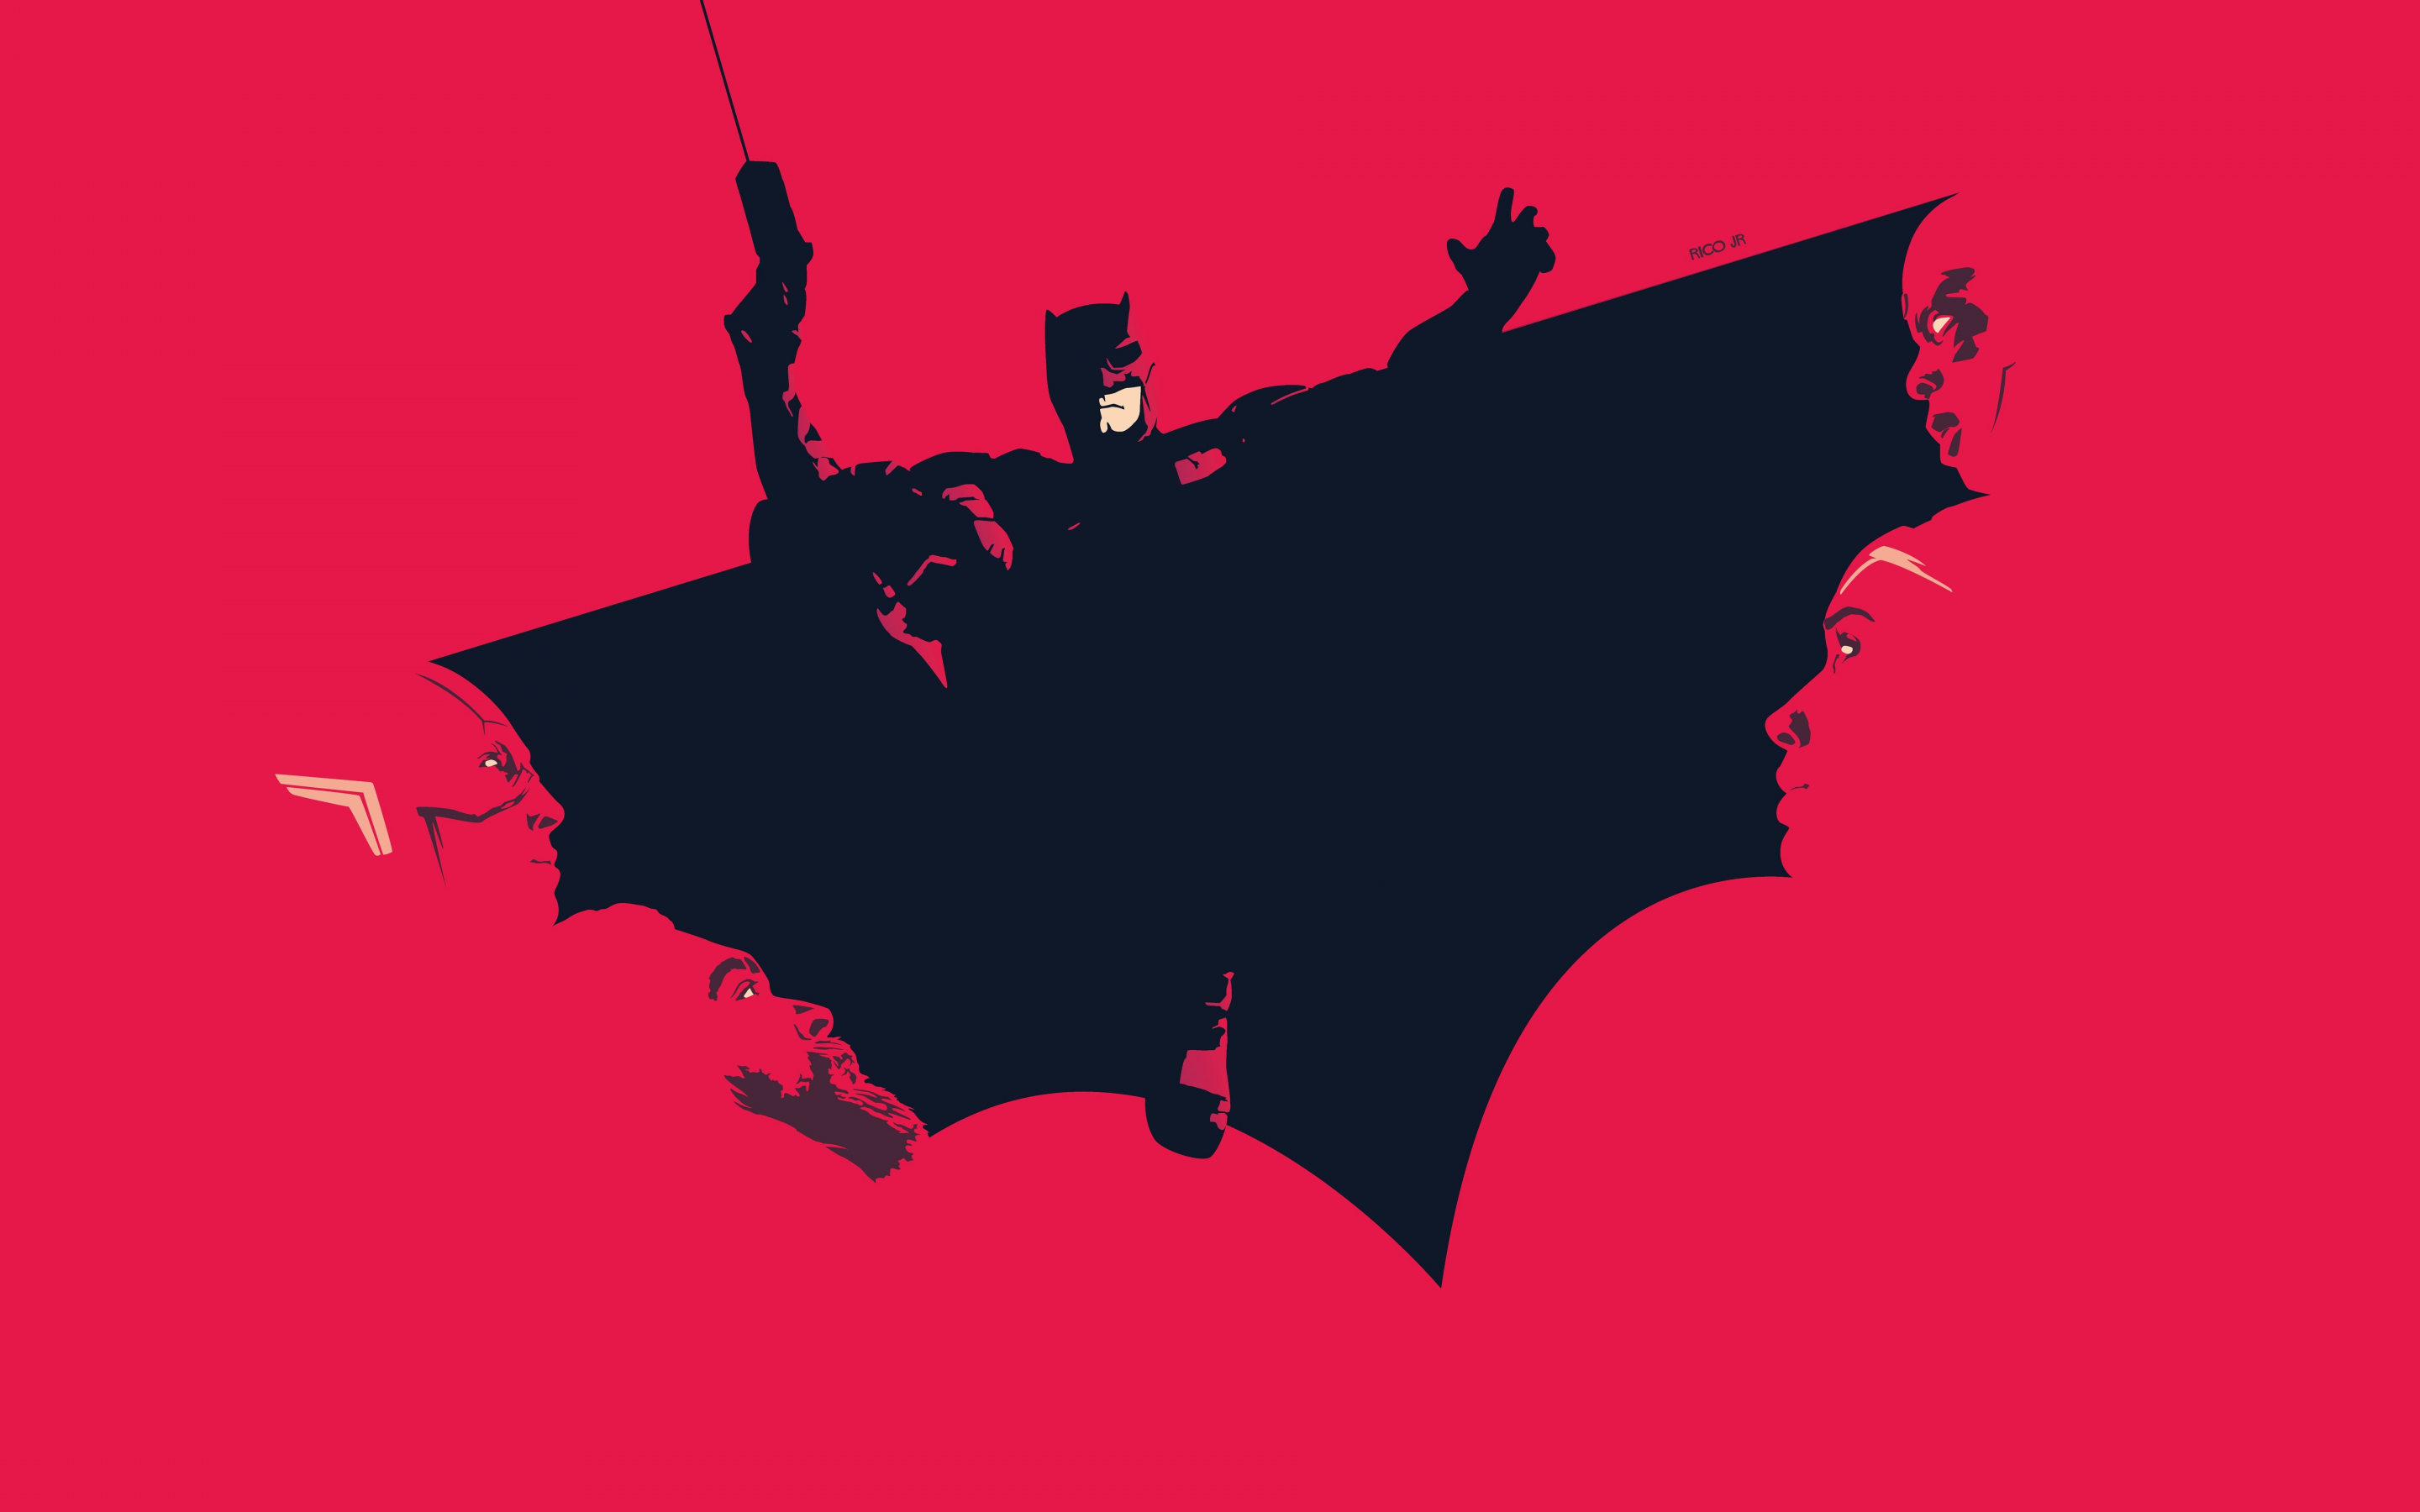 Justice league, batman, minimal art, 2880x1800 wallpaper